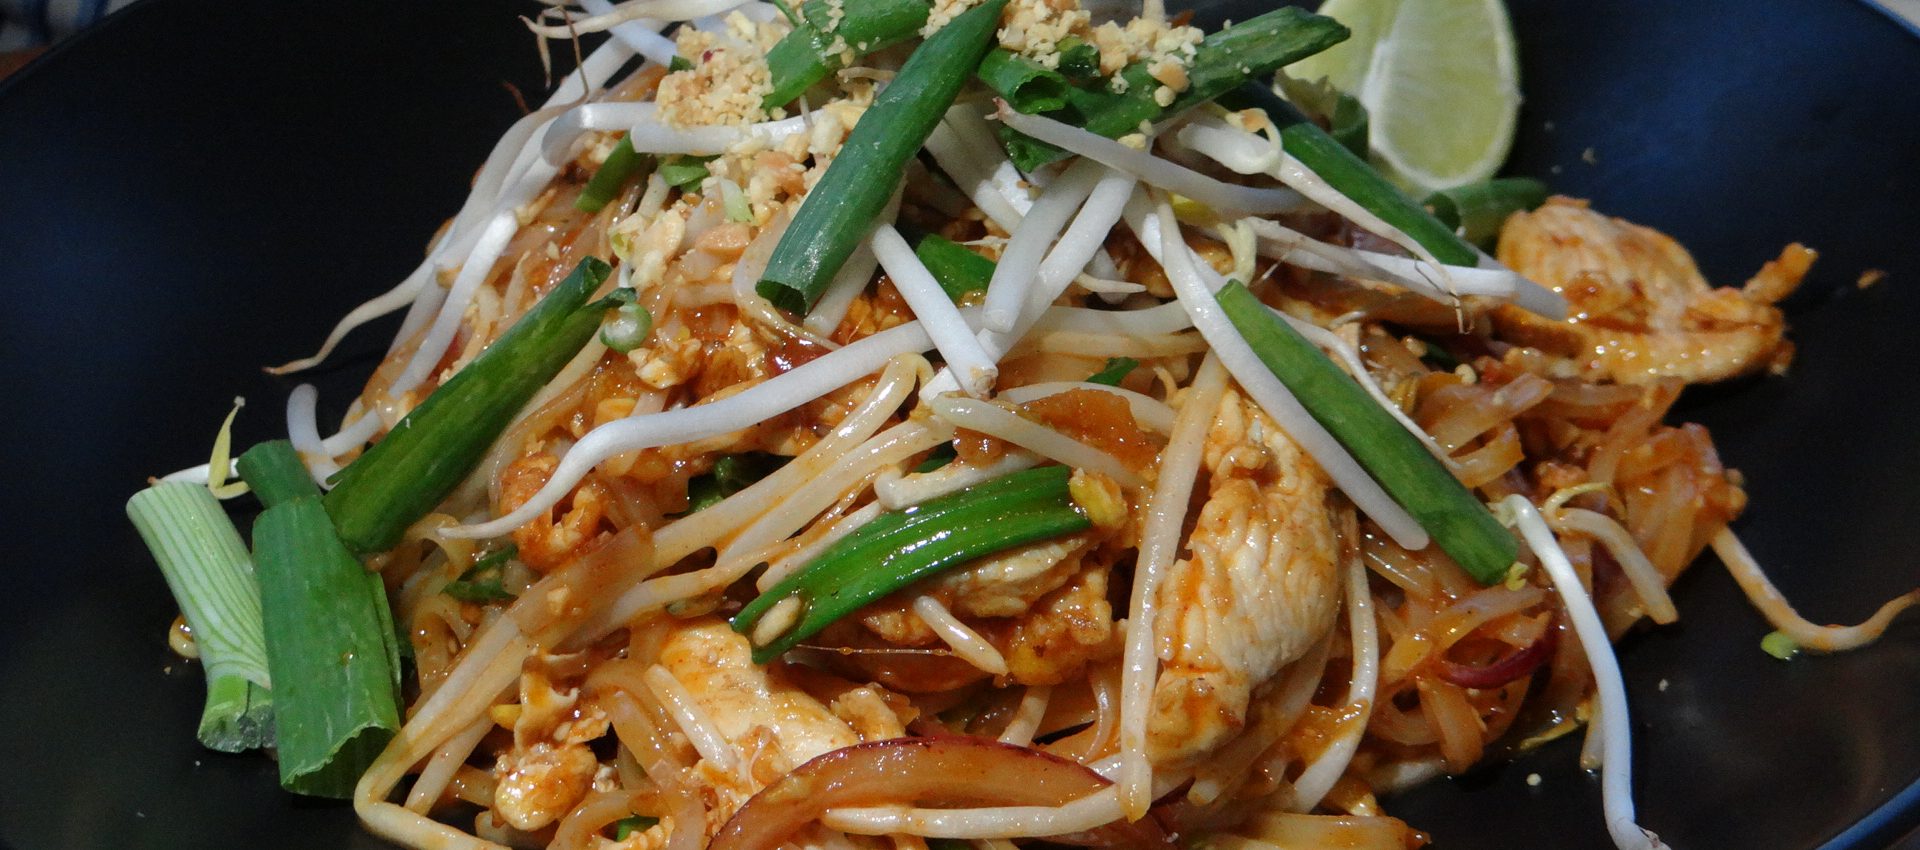 Delicious Thai food!